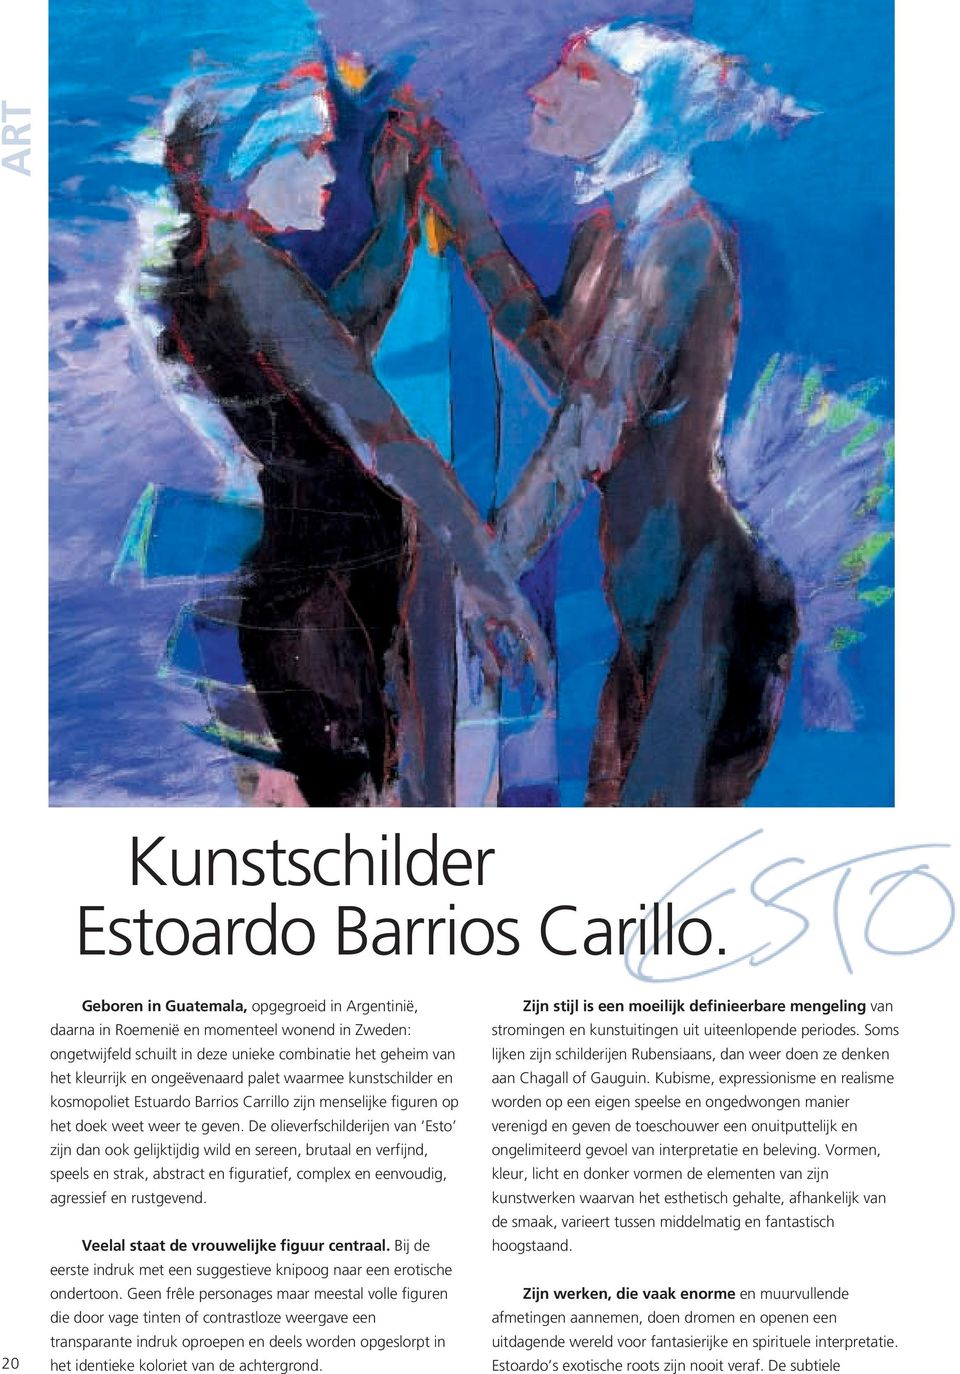 waarmee kunstschilder en kosmopoliet Estuardo Barrios Carrillo zijn menselijke figuren op het doek weet weer te geven.